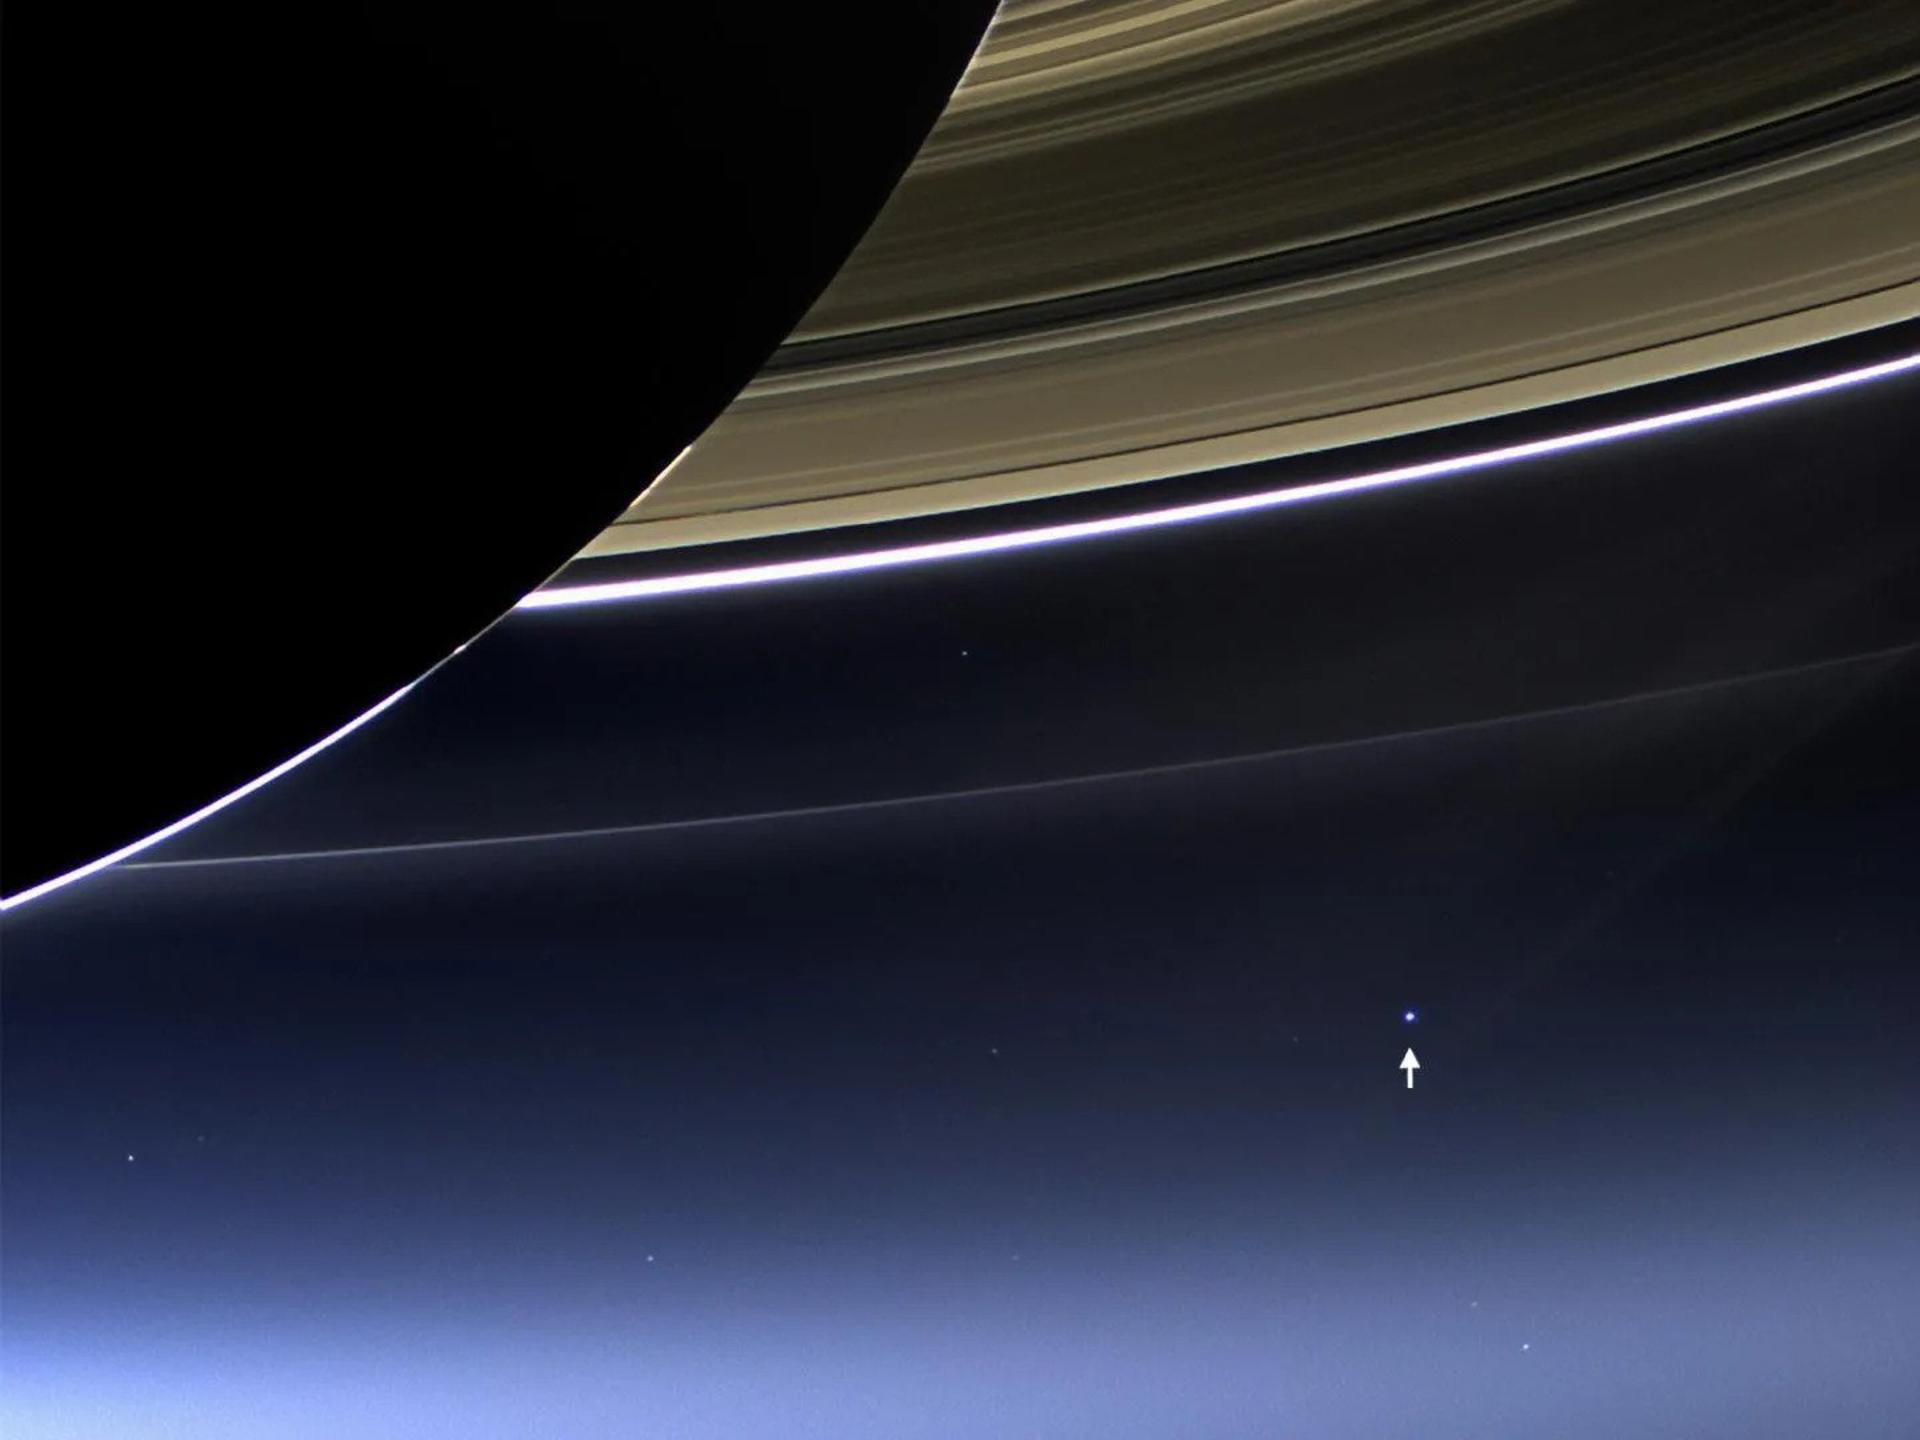  سیاره زمین از زحل (فلش سفید) از نگاه کاوشگر کاسینی